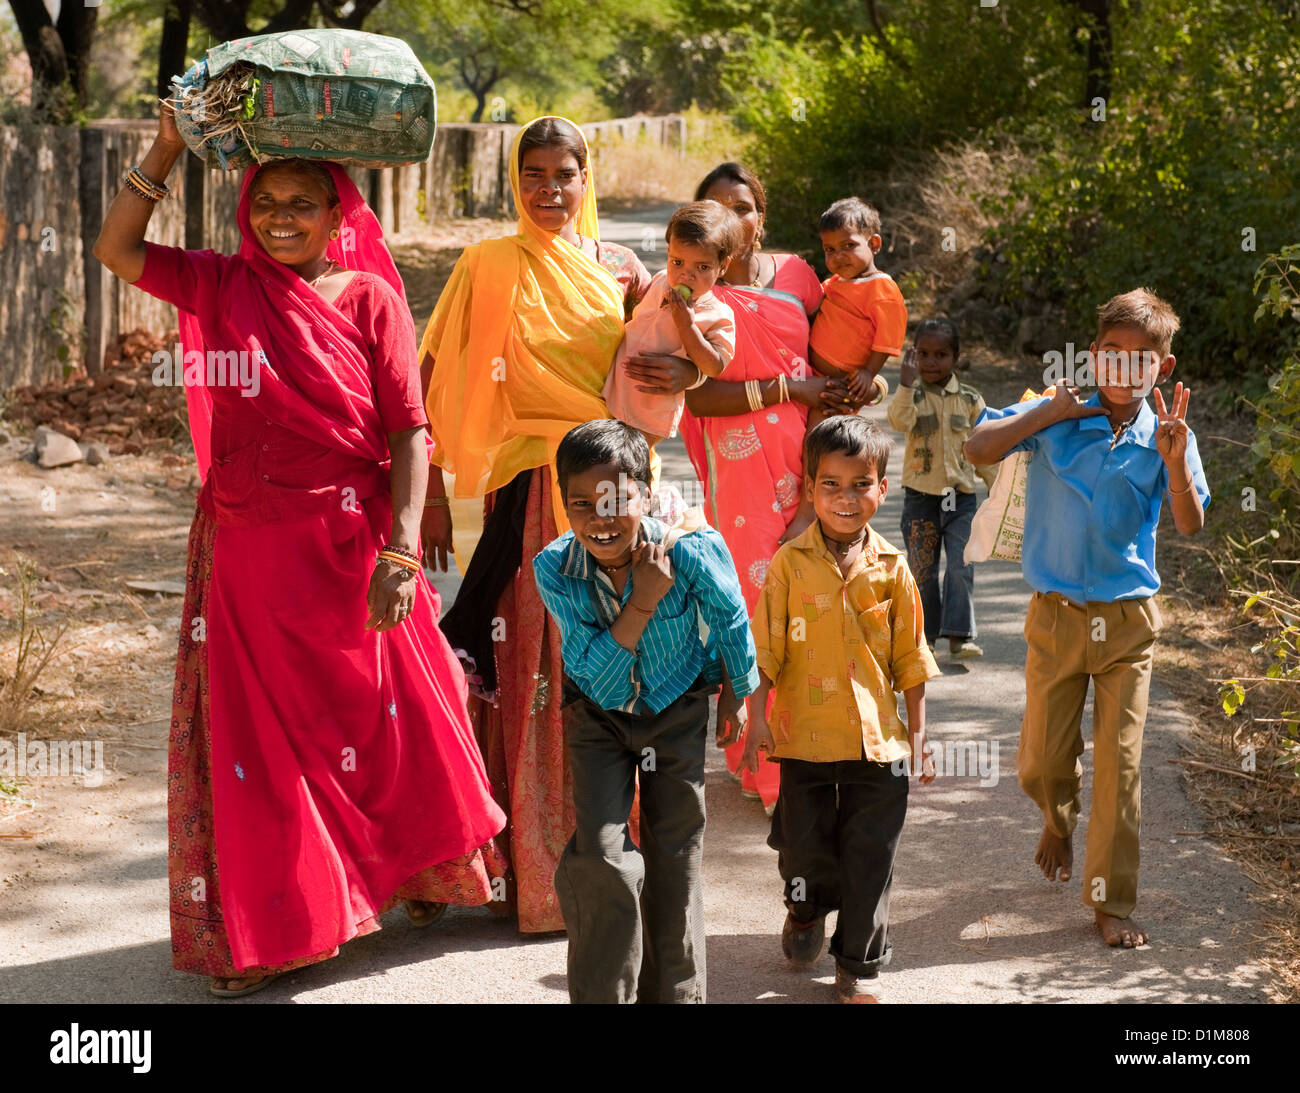 Une famille d'Indiens colorés happy smiling groupe de femmes garçons filles et un bébé de retour de shopping dans une rue calme, en Inde Banque D'Images